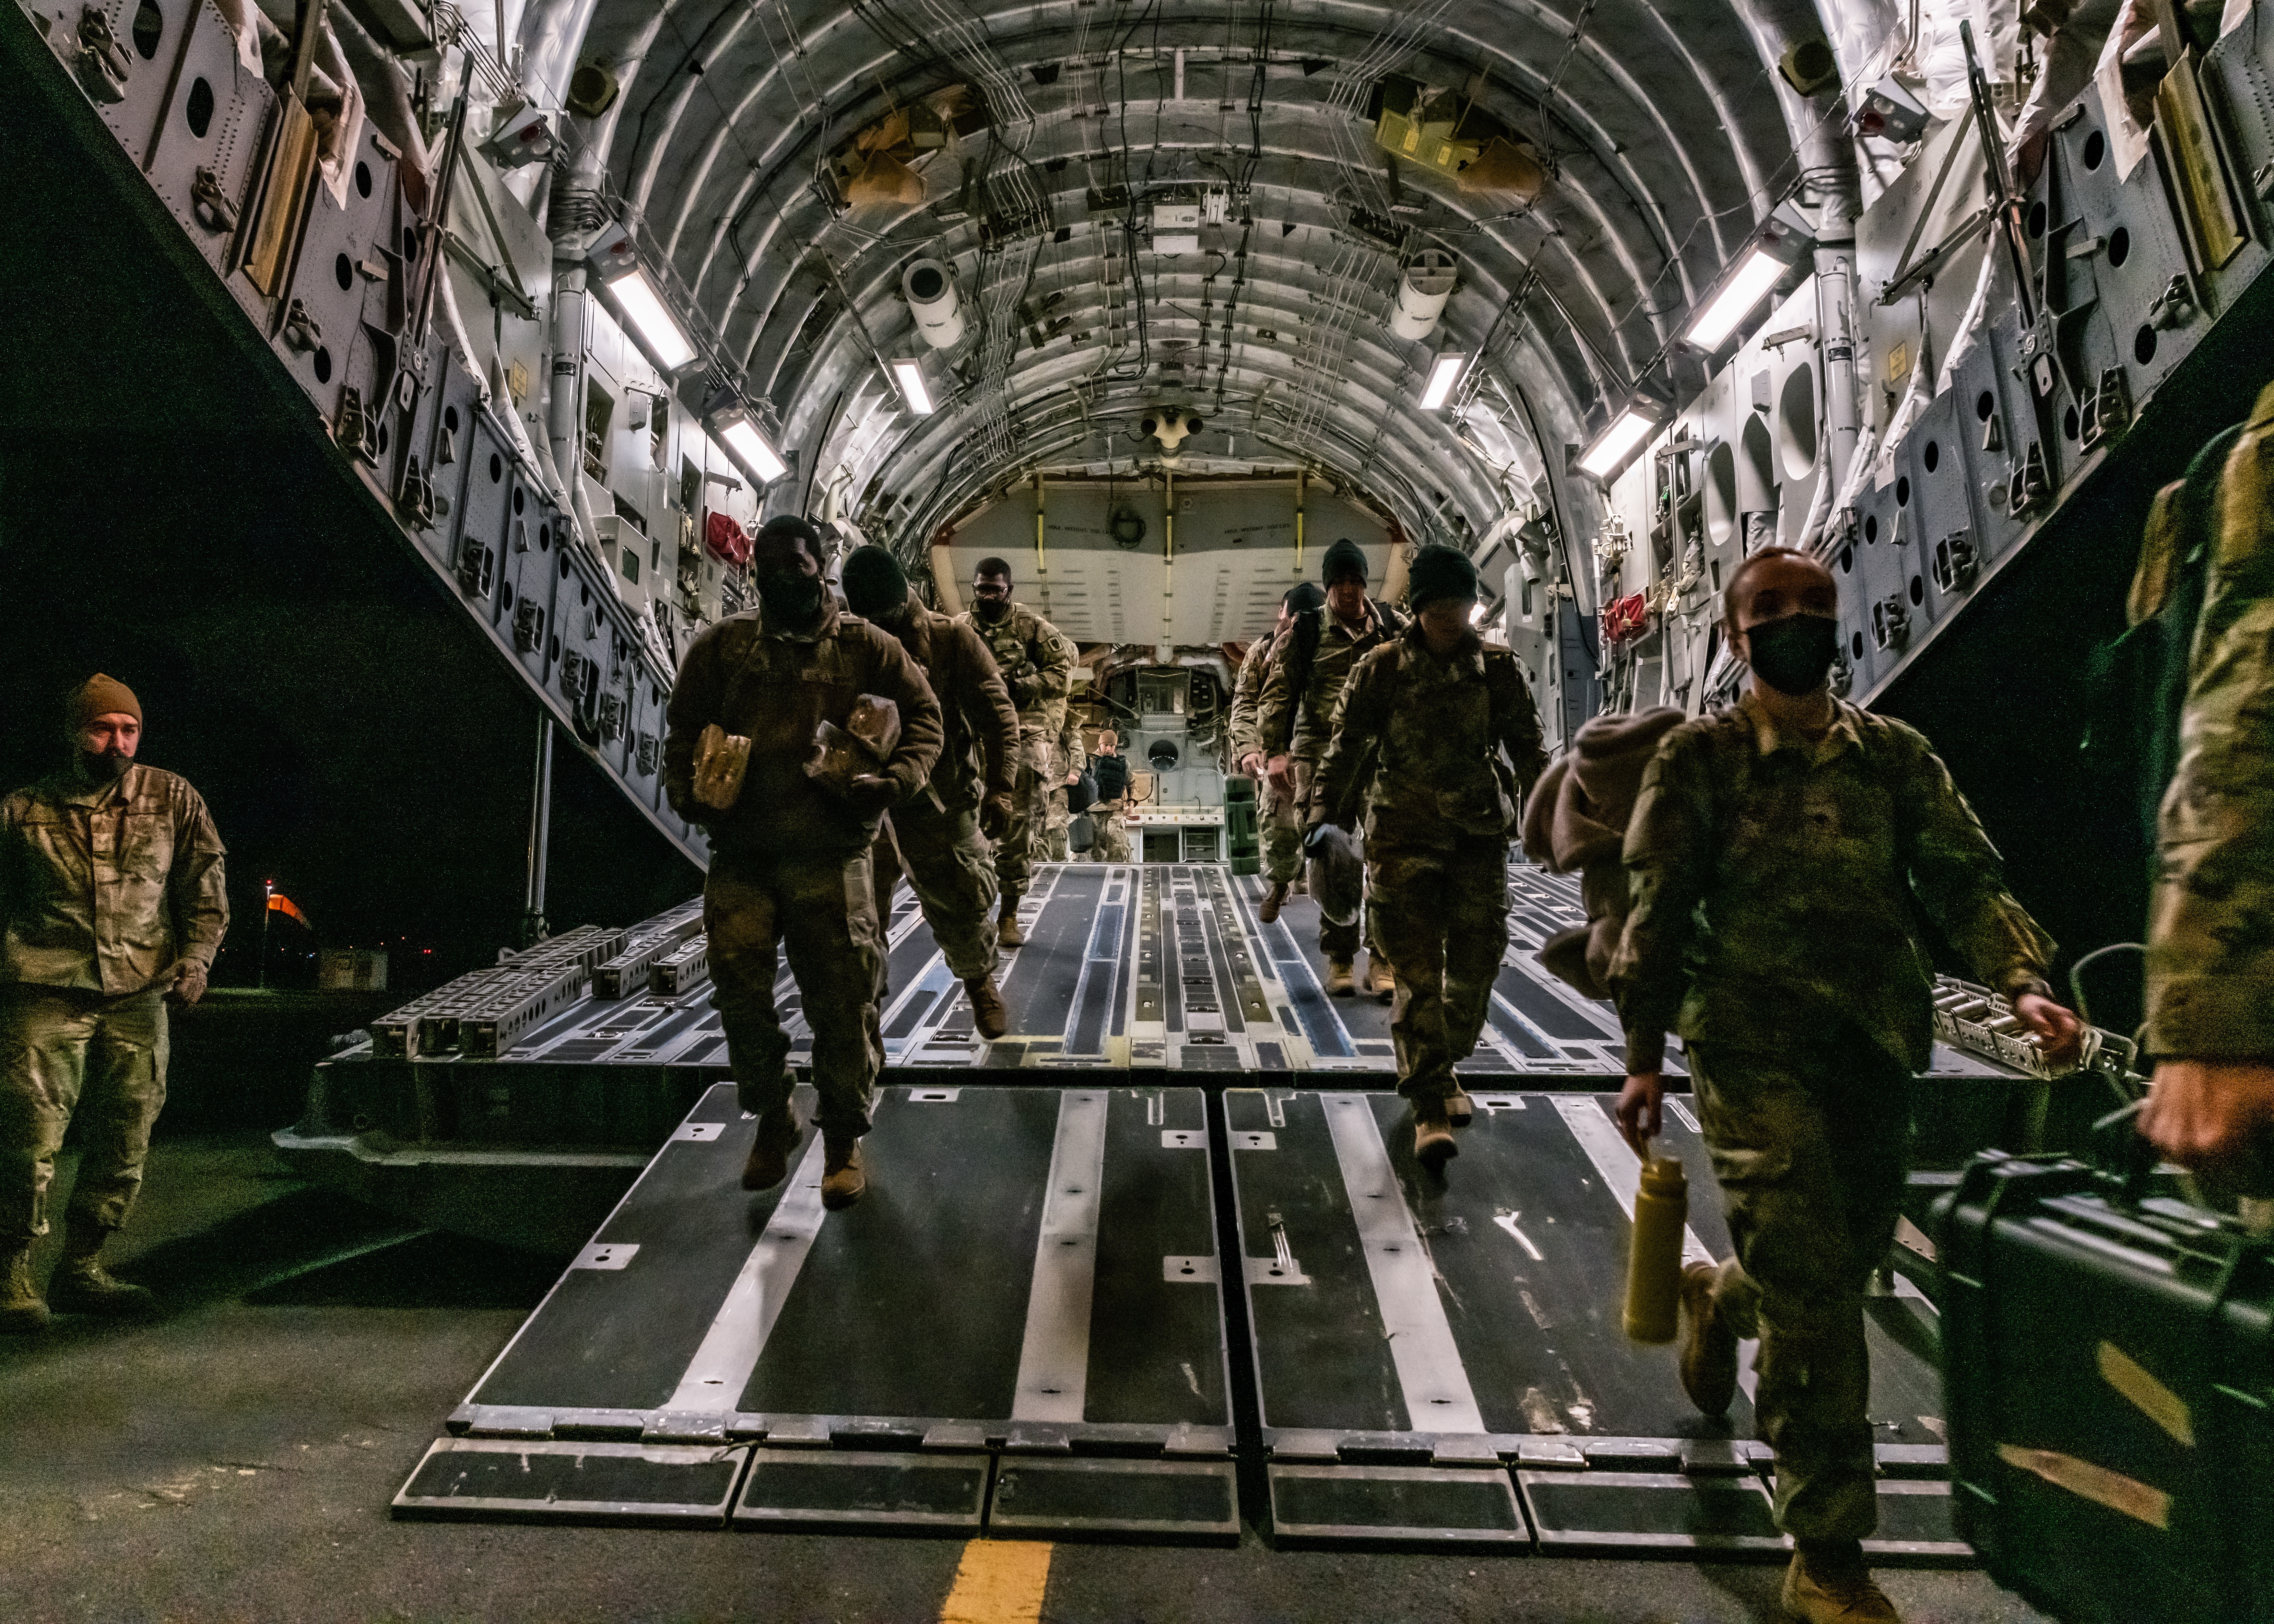 Llegan los soldados del 18º Cuerpo Aerotransportado a Wiesbaden, Alemania. Estos son los primeros de 2 mil  soldados en llegar a Europa tras el anuncio del Pentágono de que se trasladarán fuerzas adicionales de Estados Unidos a Europa en apoyo de los aliados de la OTAN. (Foto Prensa Libre: EFE)